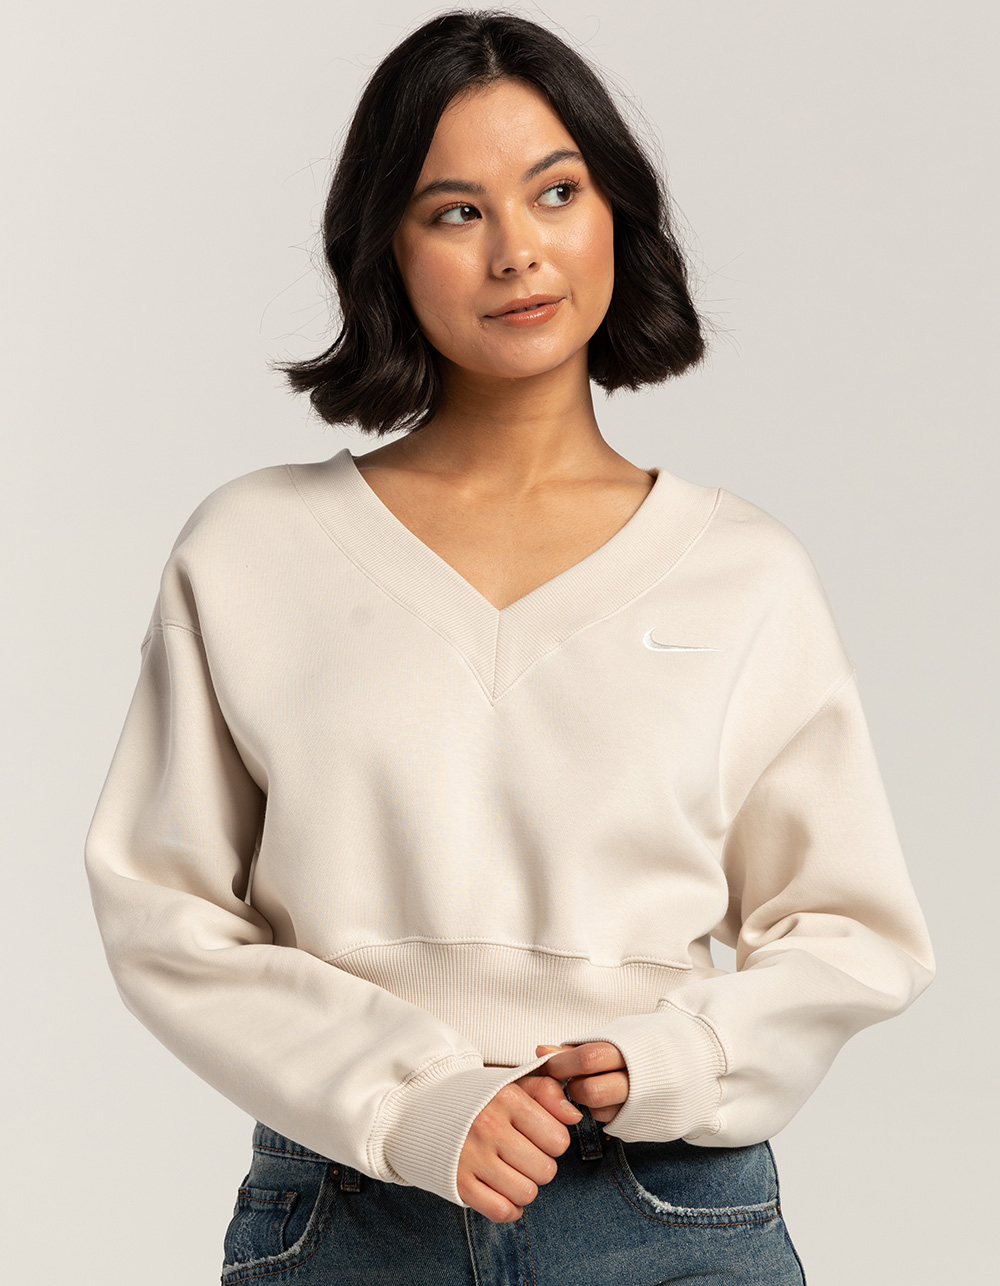 NIKE Sportswear Phoenix Fleece Womens Cropped V-Neck Sweatshirt